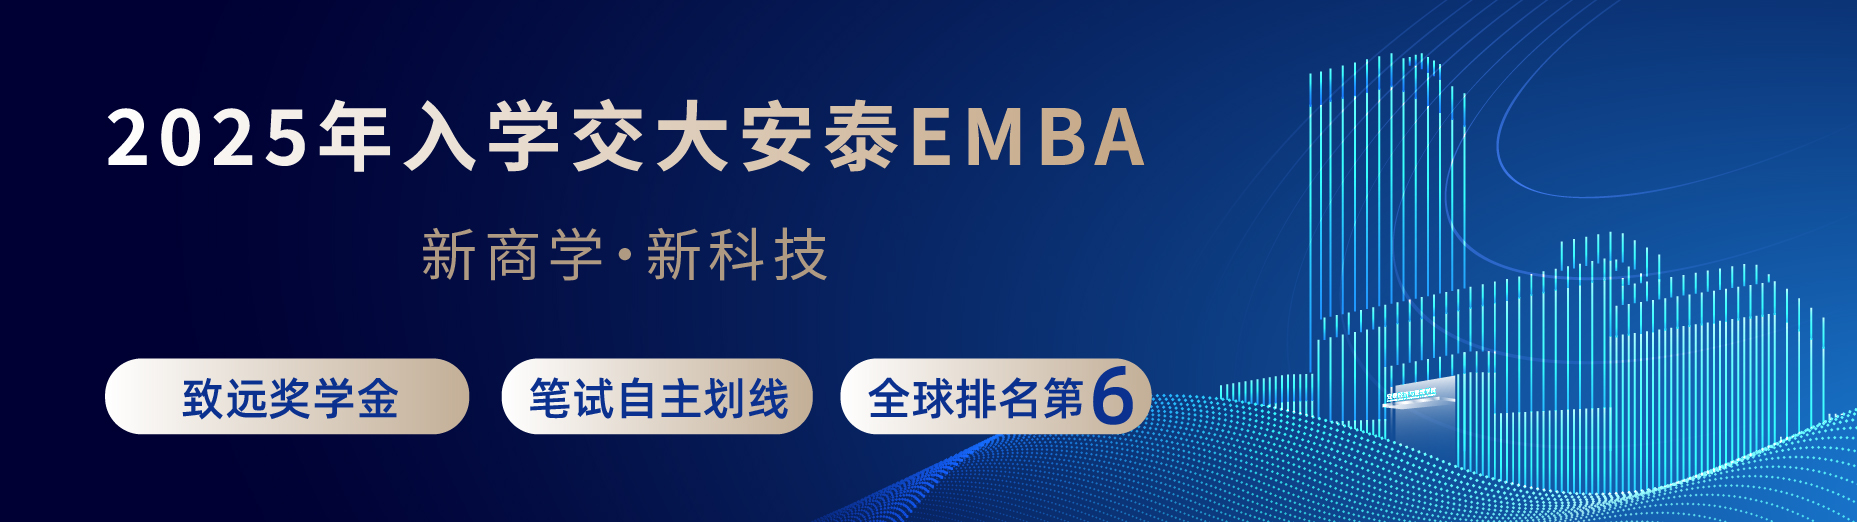 交大安泰EMBA招生简章-2025年